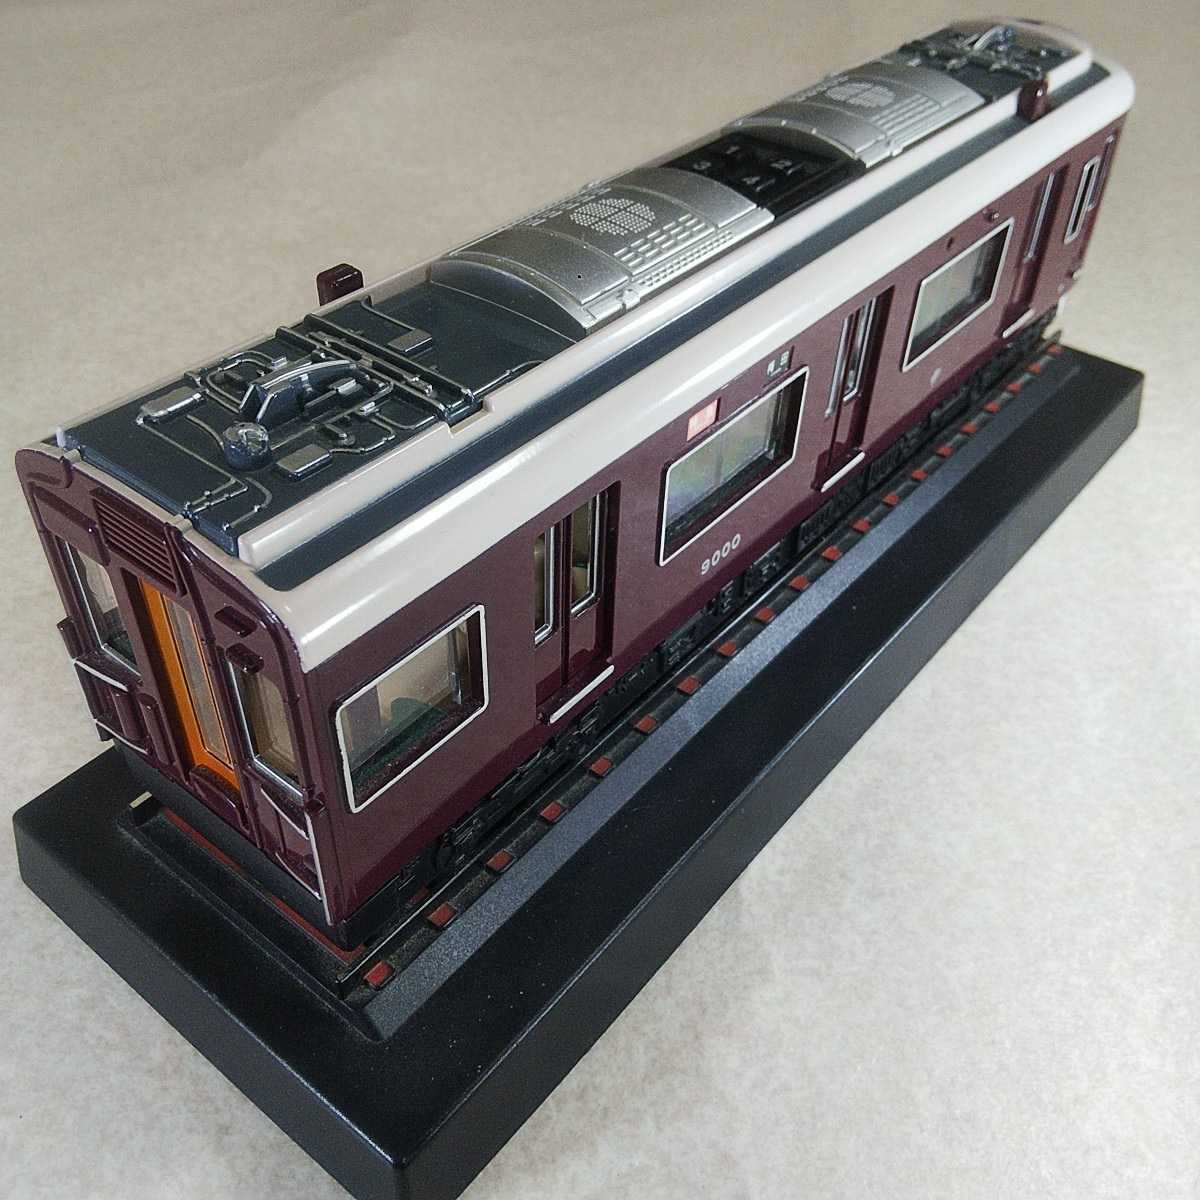 トイコー サウンドトレイン - 鉄道模型